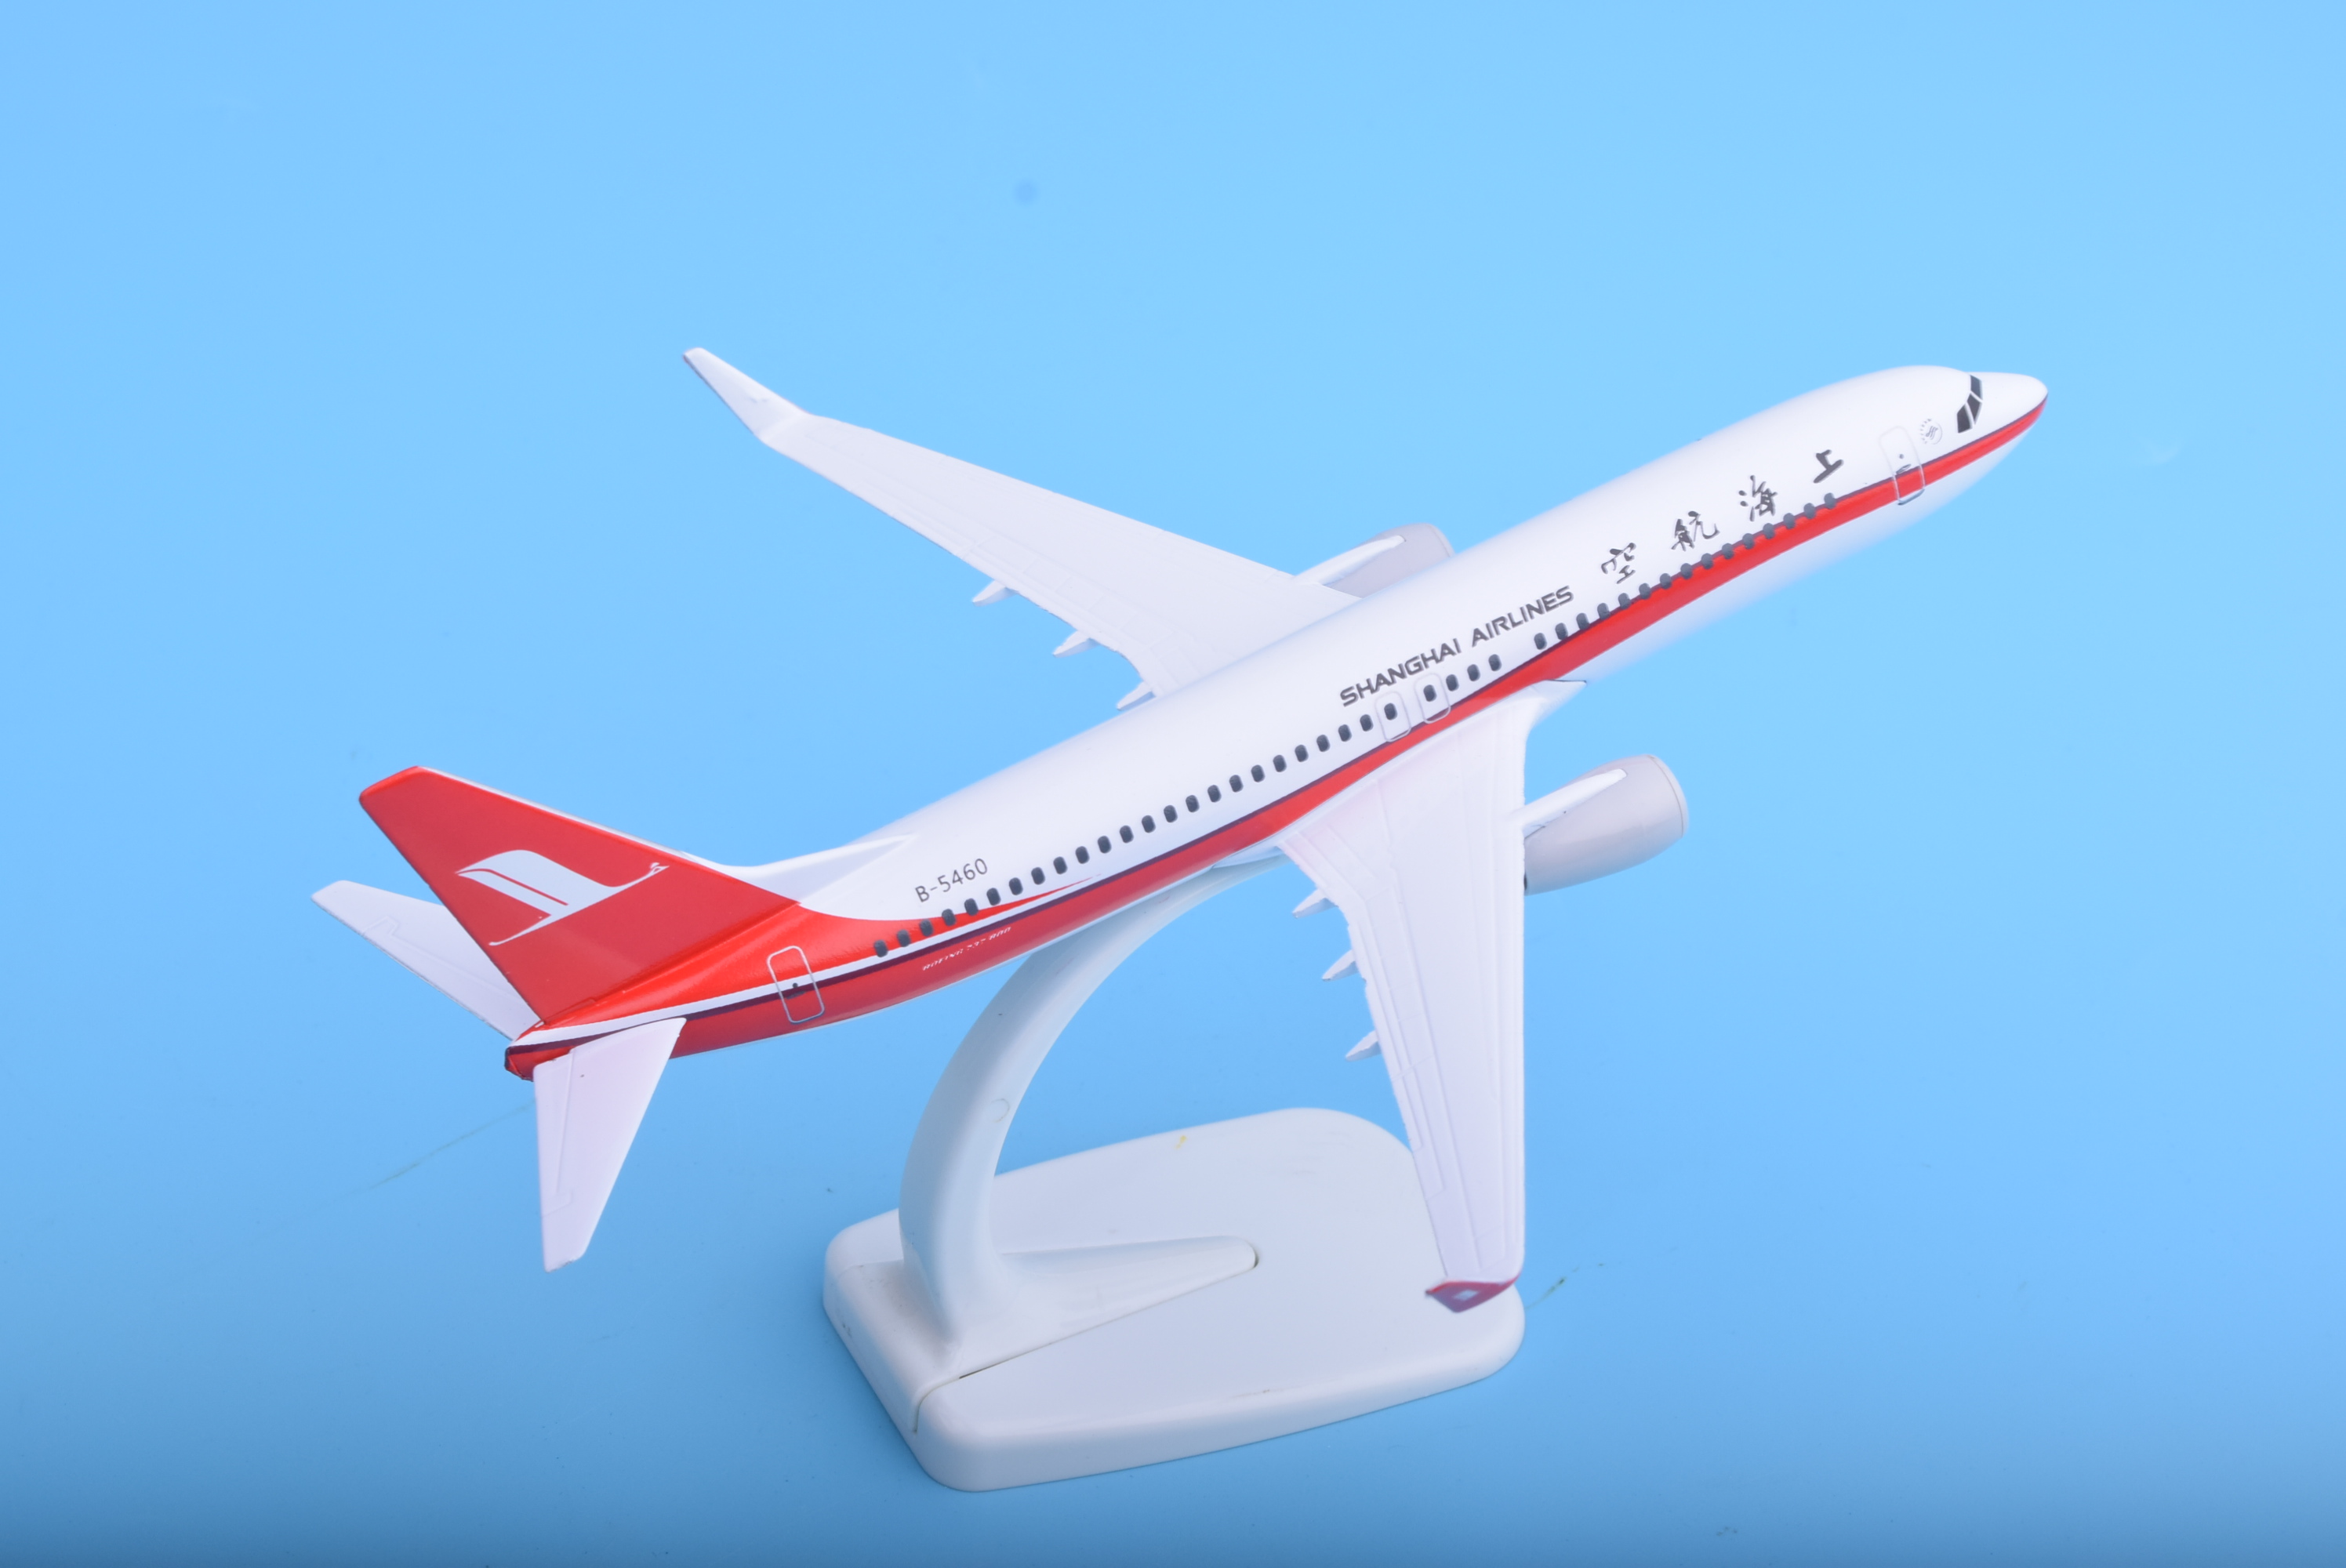 飞机模型波音b737-800上海航空玩具礼品20cm锌合金航空模型厂家